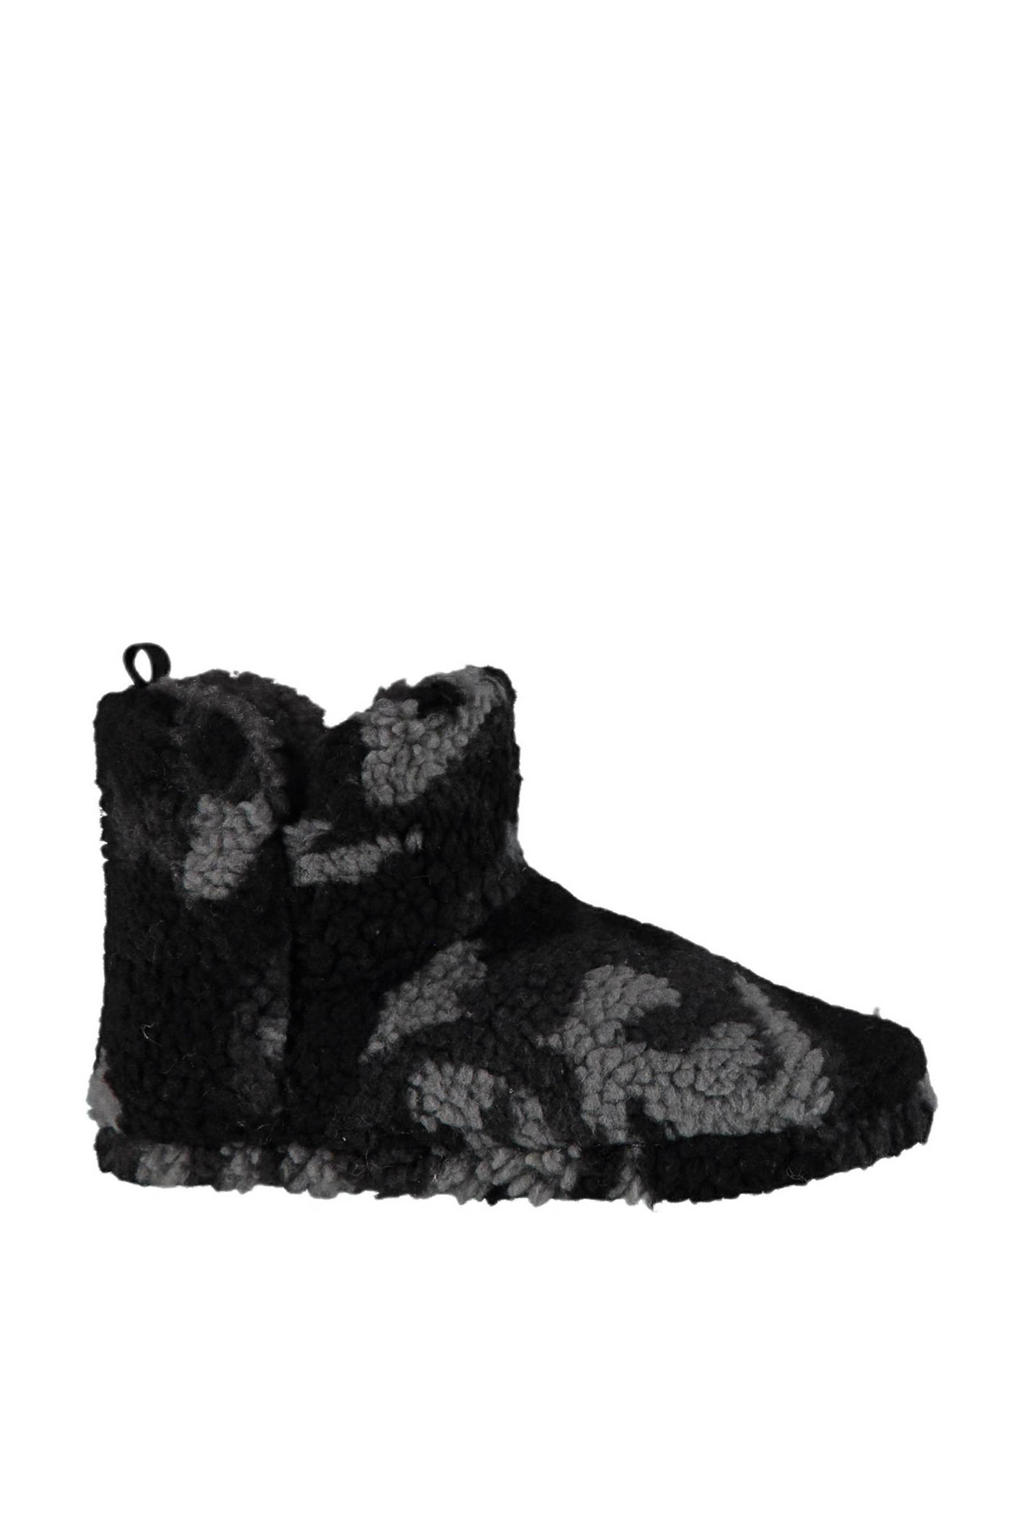 Apollo teddy pantoffels met camouflageprint grijs/zwart